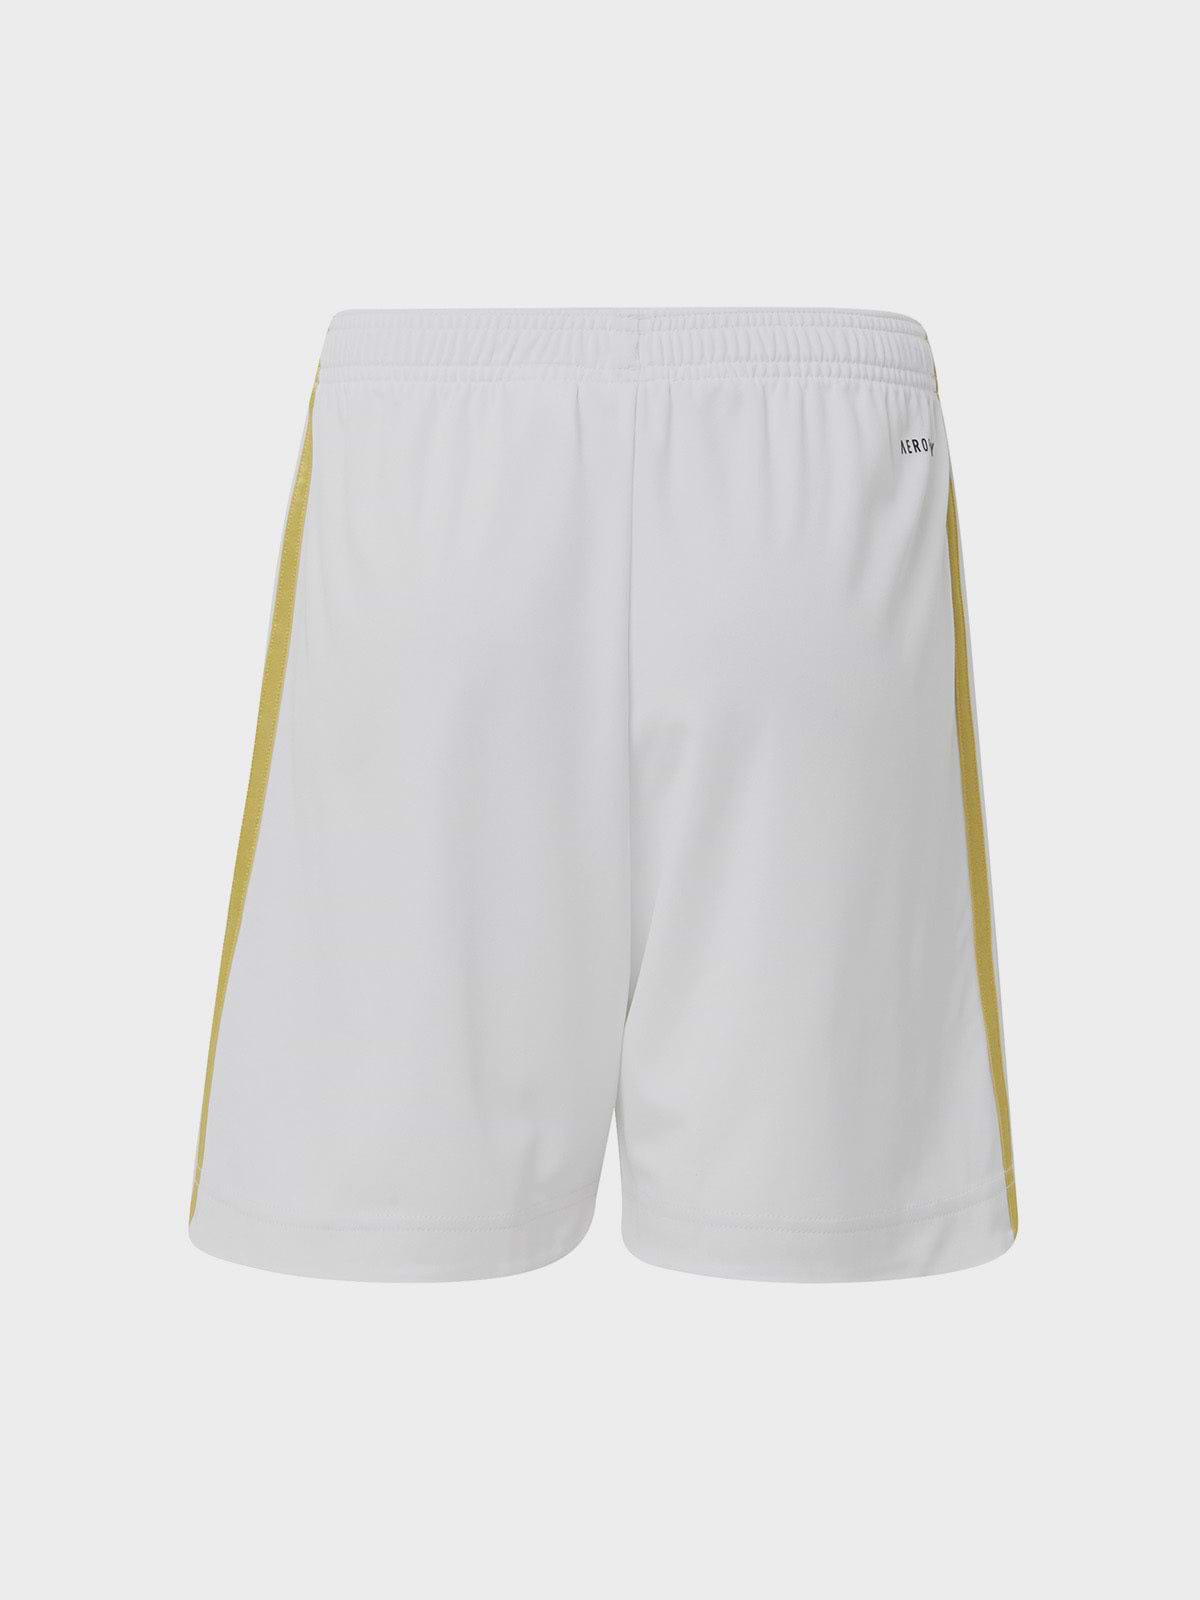 מכנסי כדורגל קצרים עם לוגו יובנטוס / ילדים ונוער- adidas performance|אדידס פרפורמנס